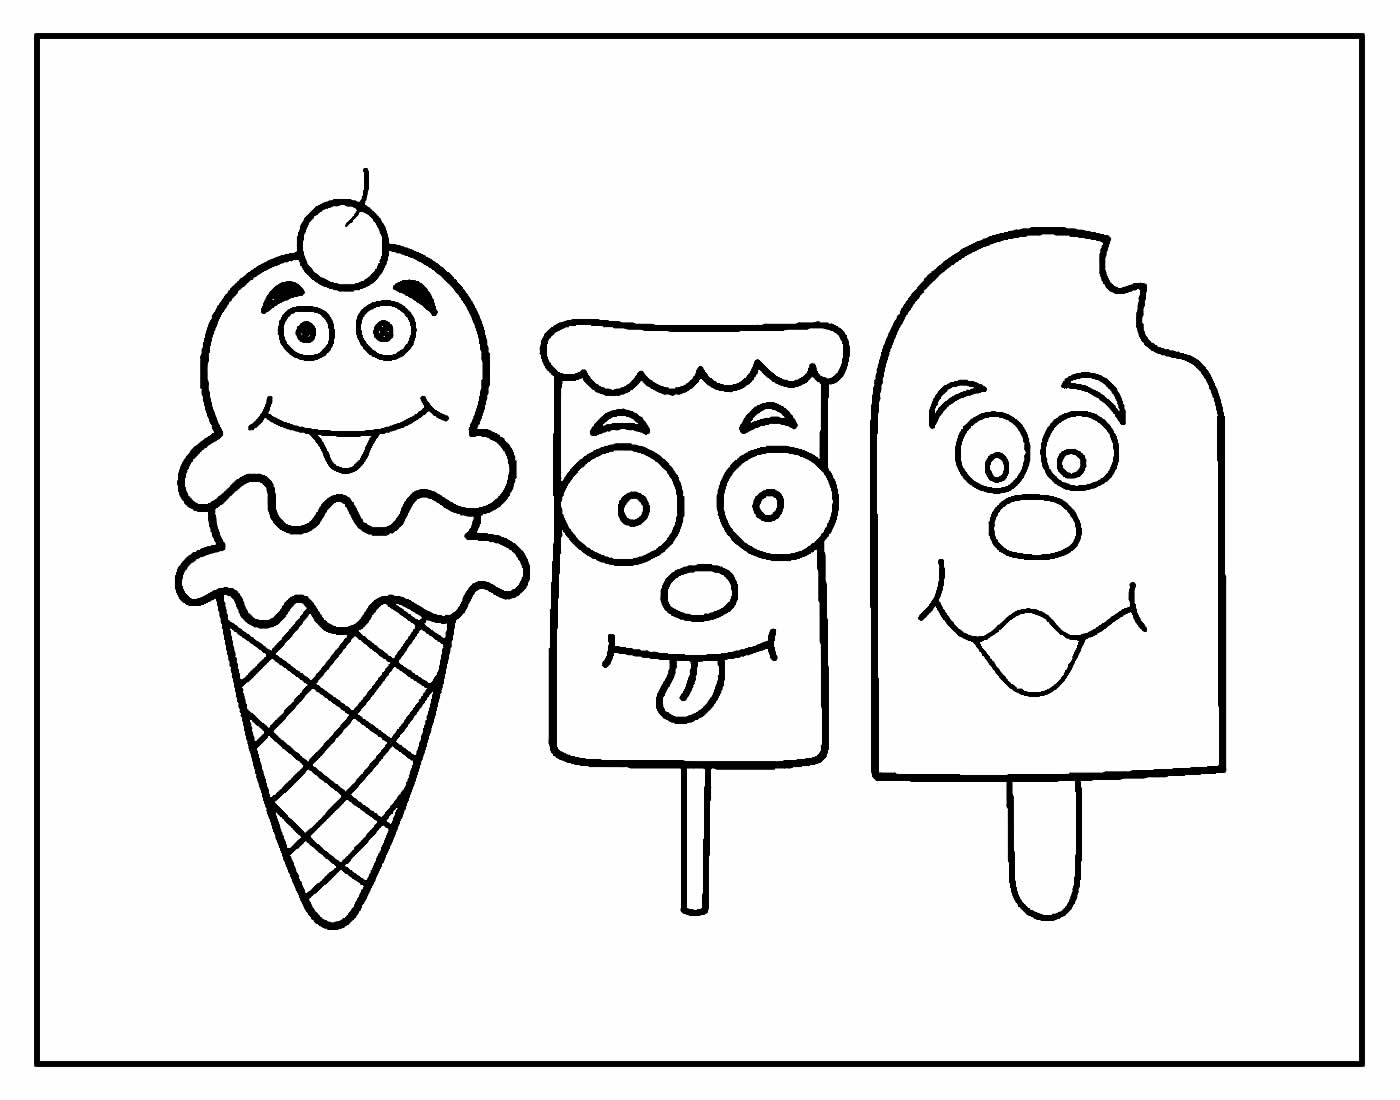 Раскраска мороженщик. Раскраска мороженое. Раскраска МО РО же но е. Раскраски с мороженым. Мороженое раскраска для детей.